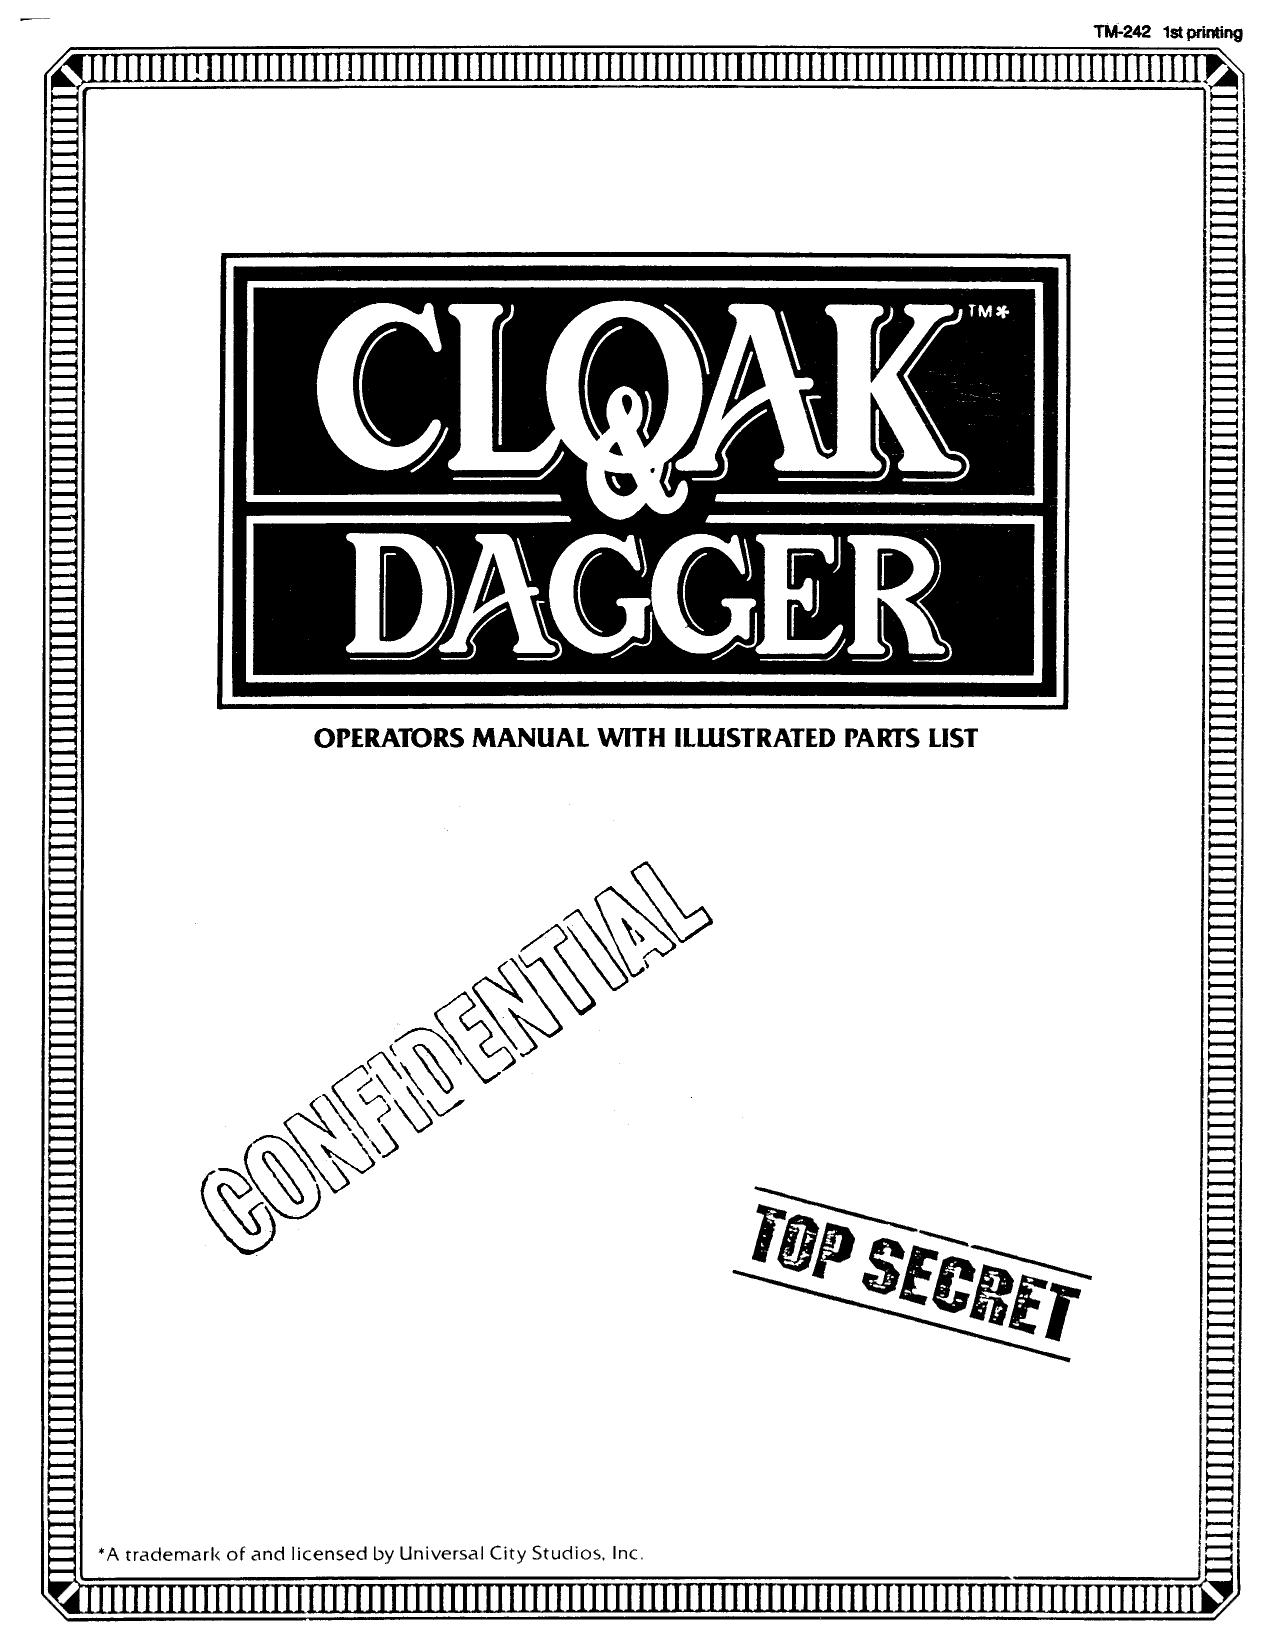 Cloak&Dagger Manual